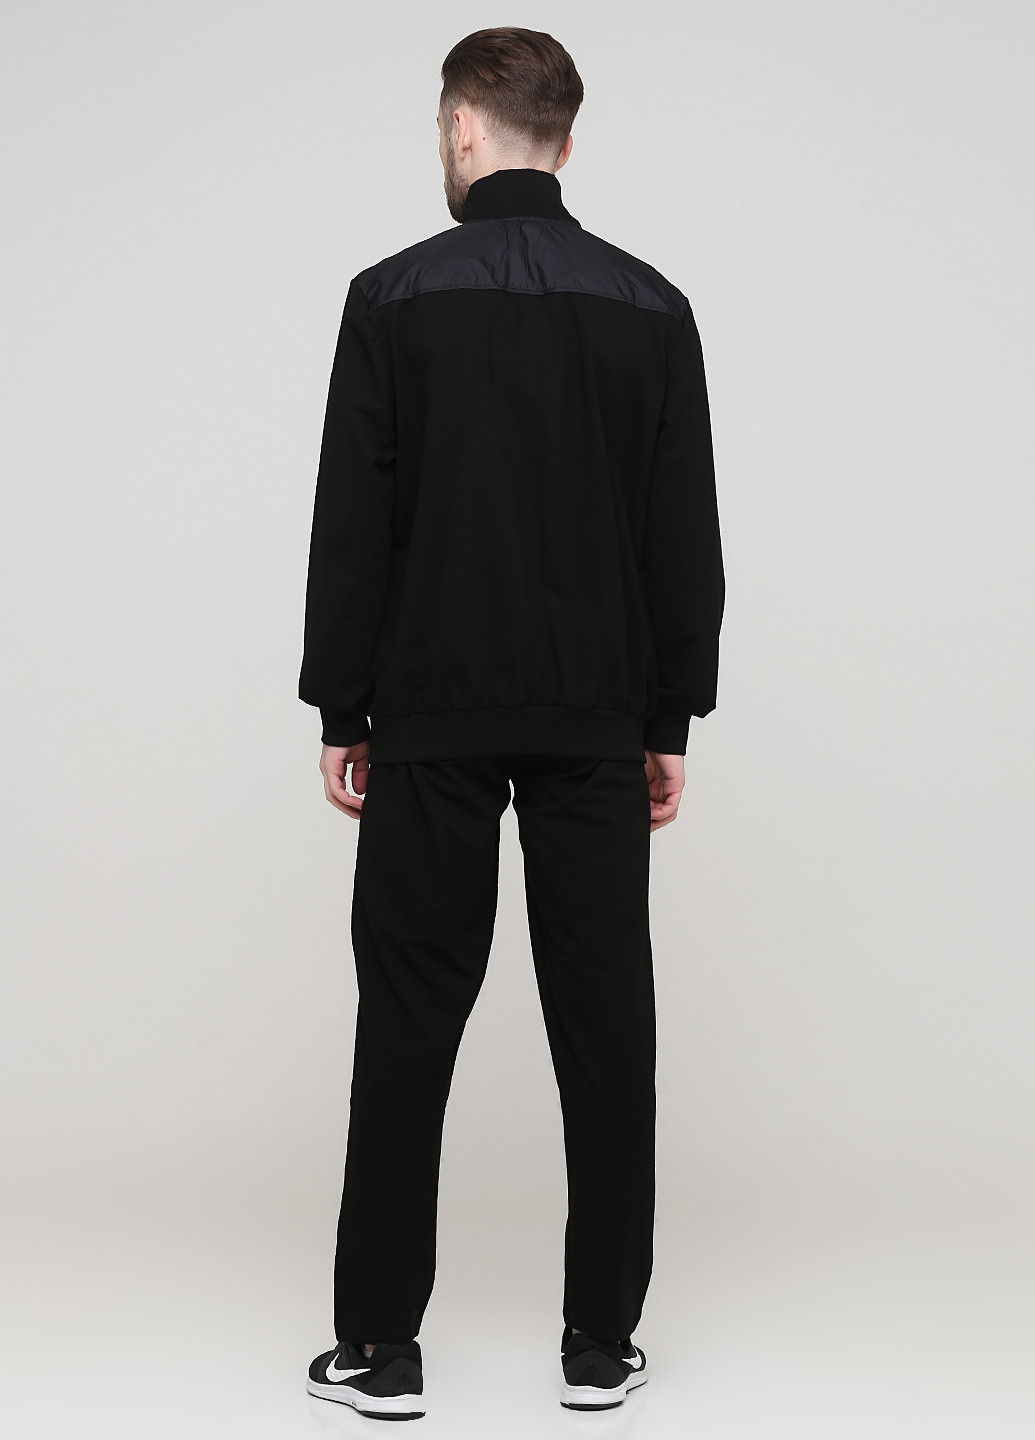 Черный демисезонный костюм (толстовка, брюки) брючный DMR-X